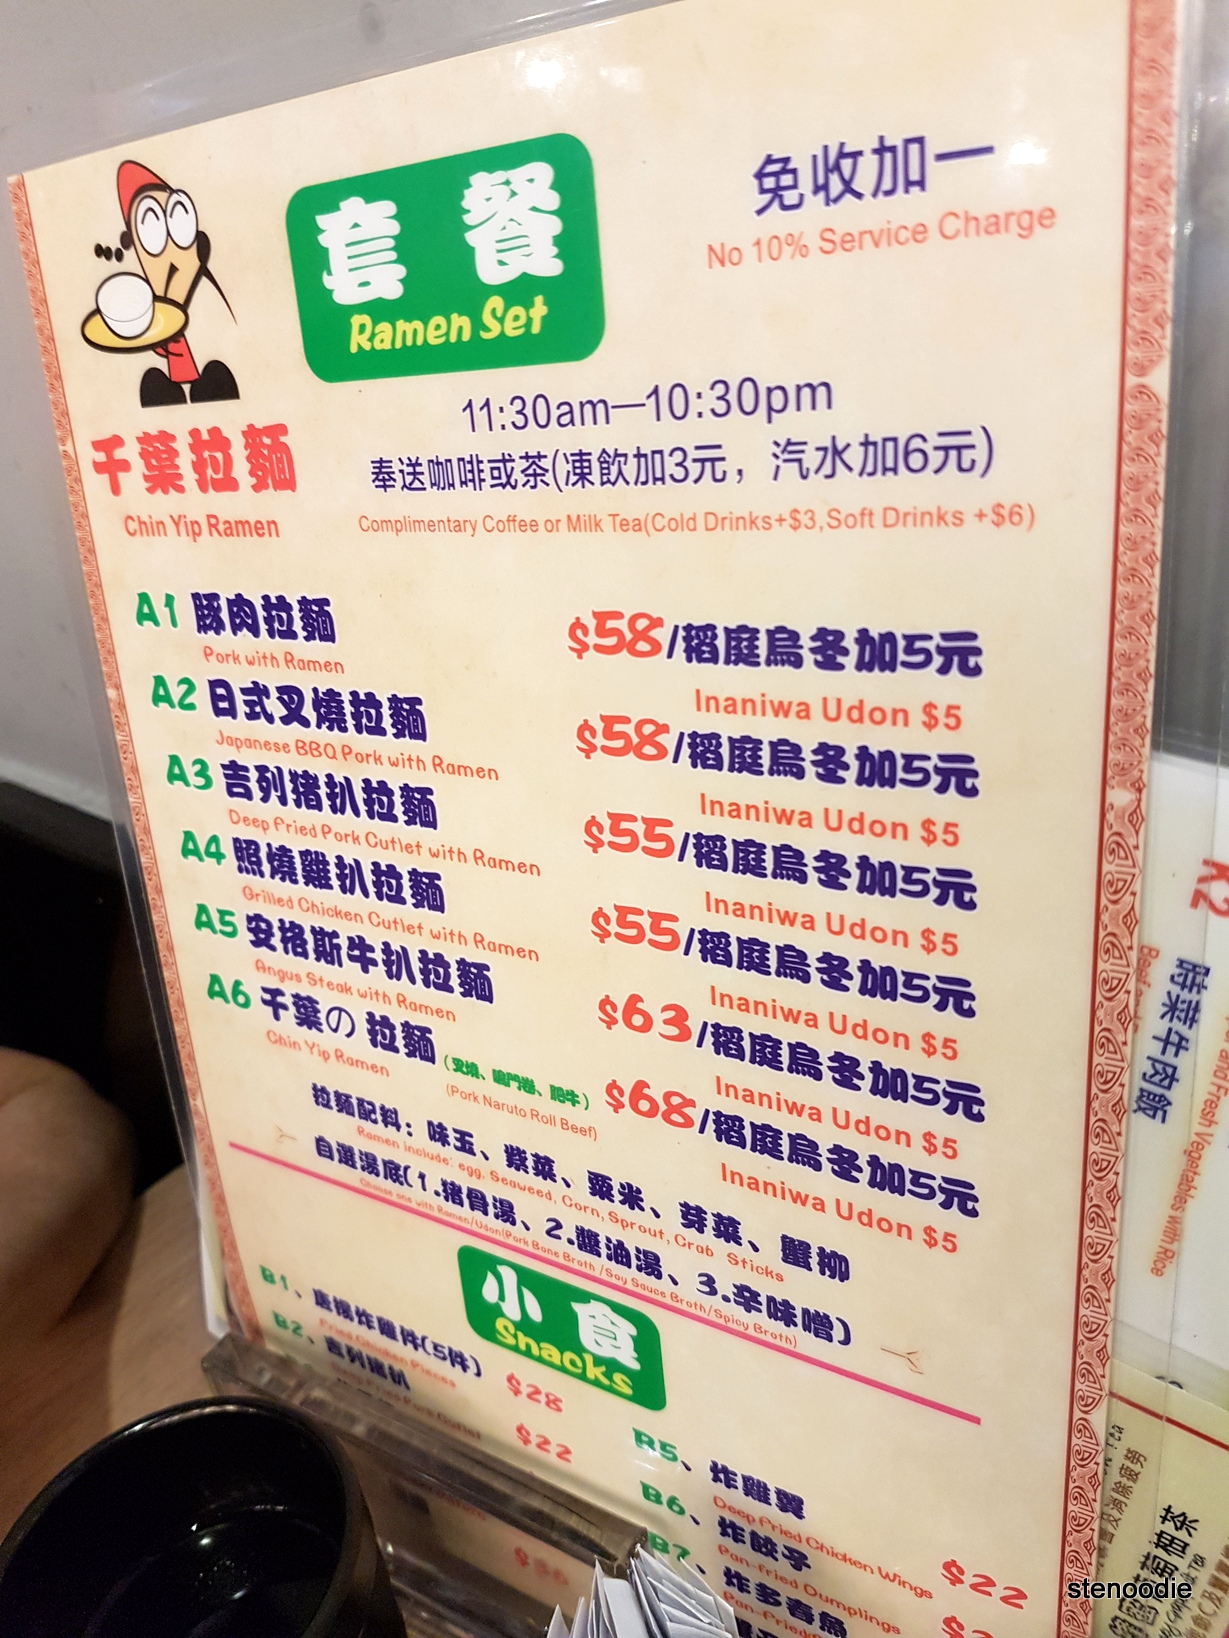 Chin Yip Ramen Set menu